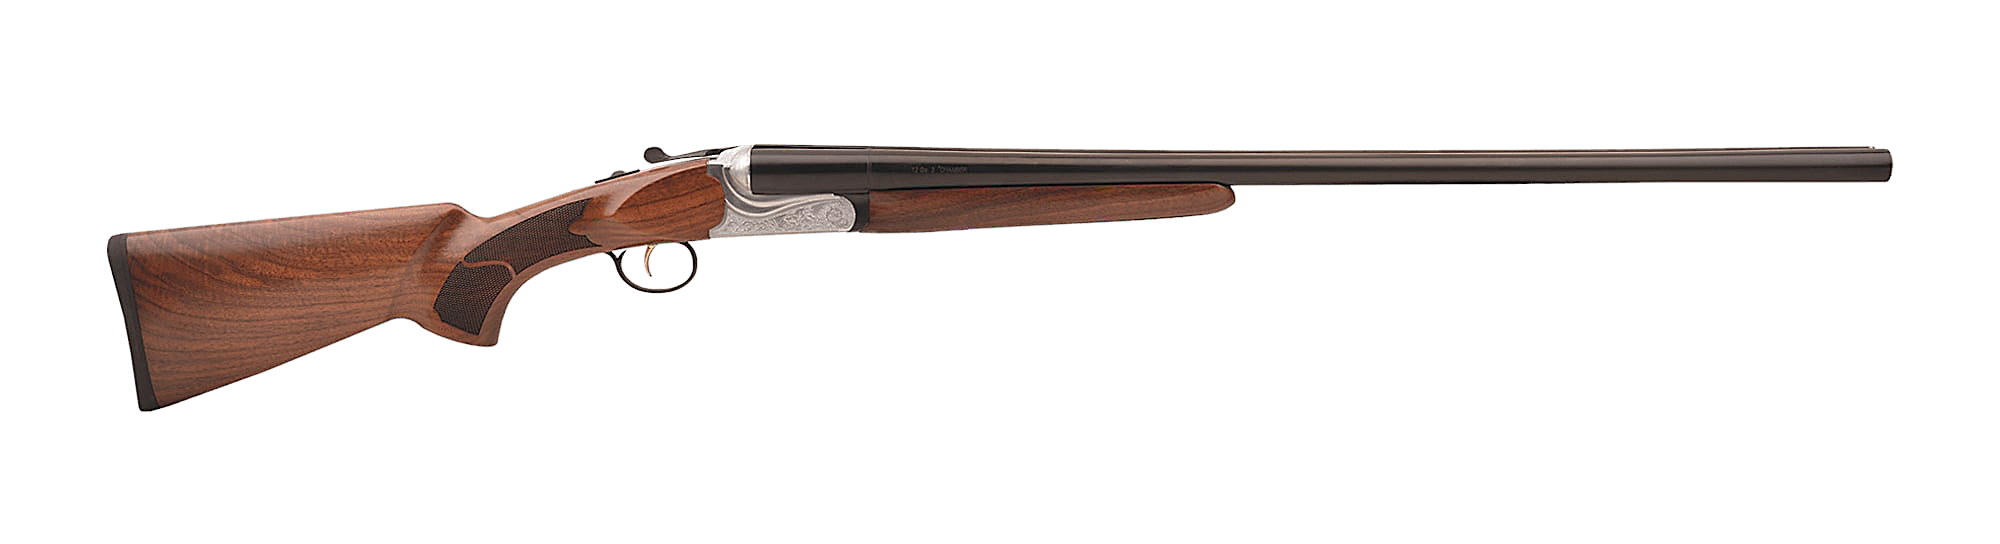 Ozbay SBS12 Side-by-Side Shotgun